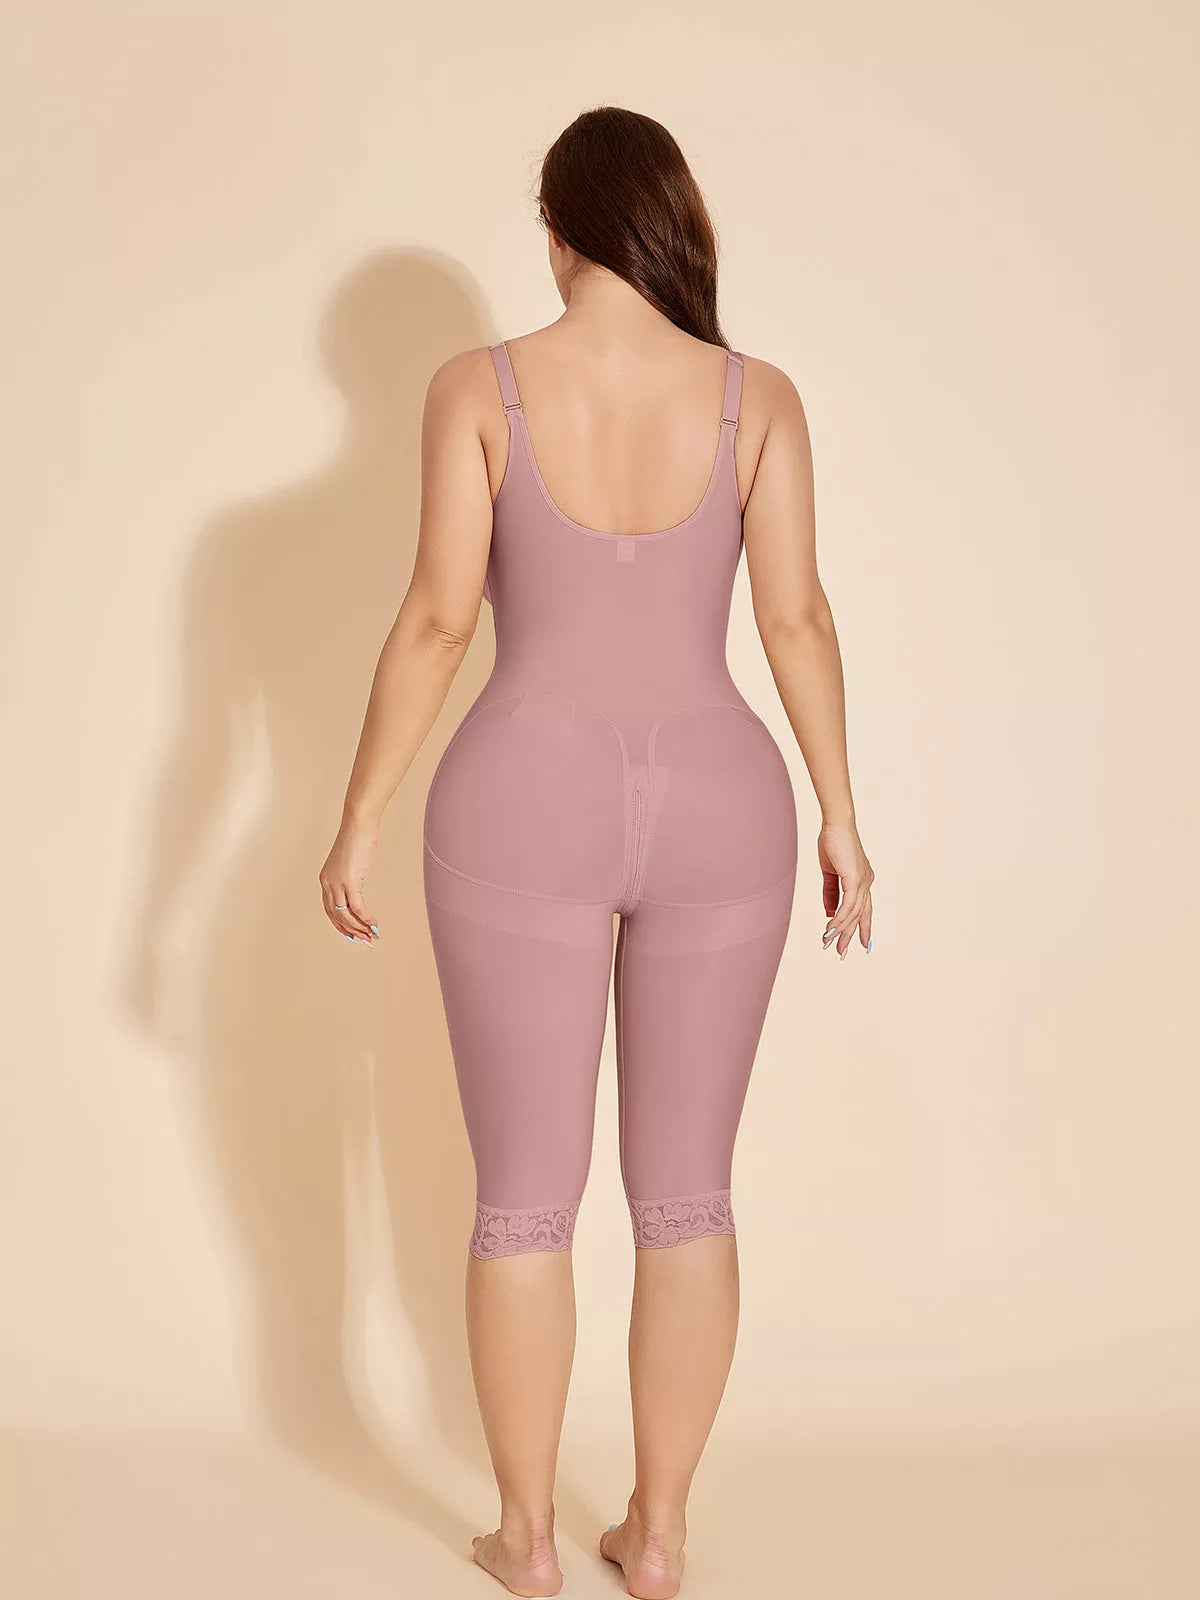 Full Body Control Shapewear Women Body Shaper – Idols Store